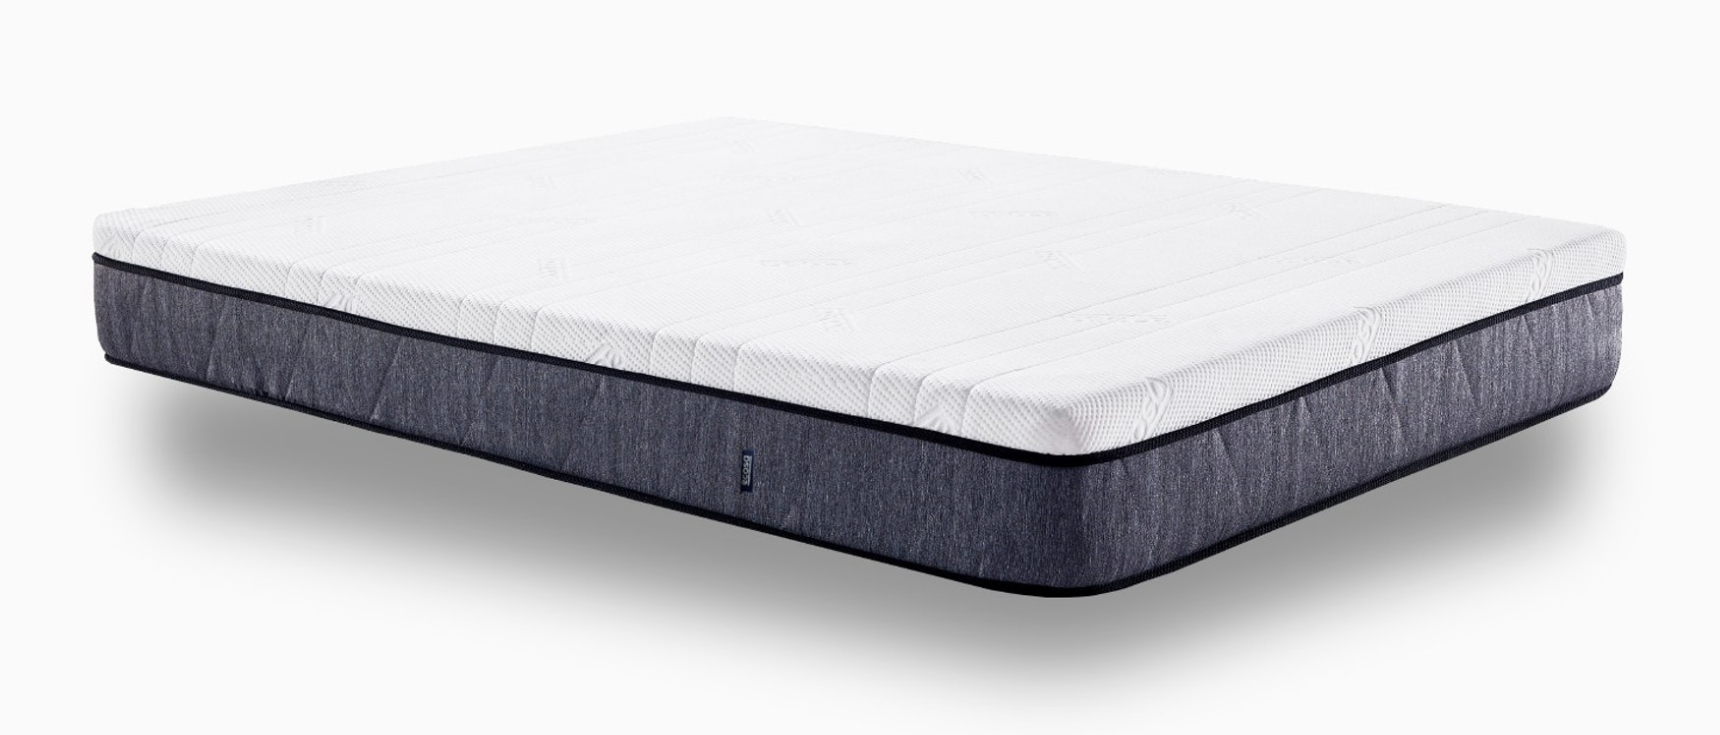 ecosa king mattress dimensions